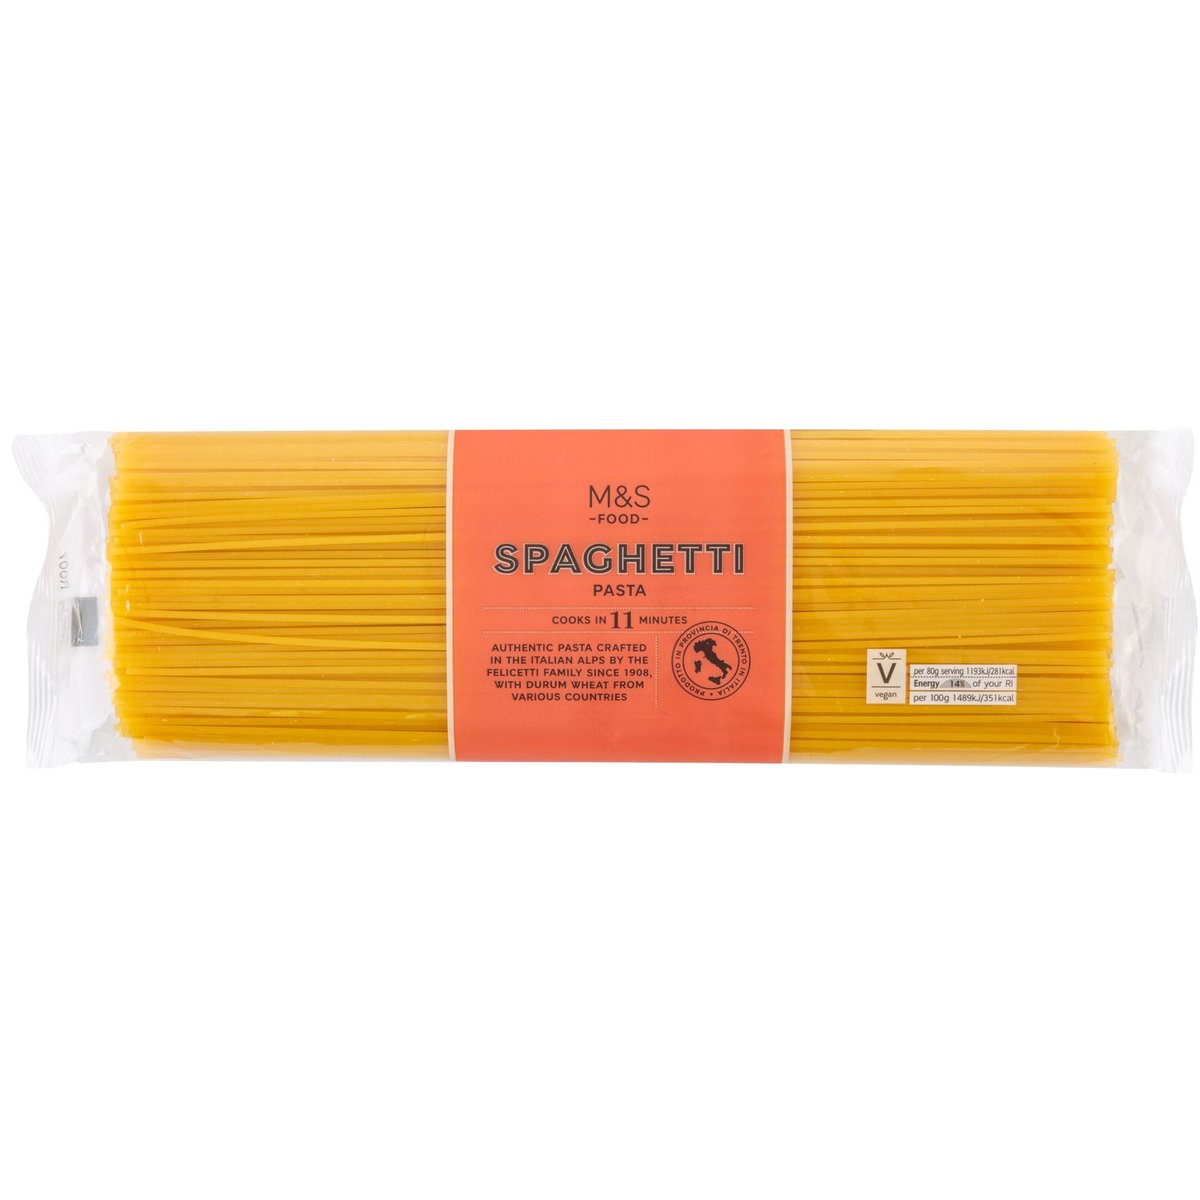 Marks & Spencer Spaghetti